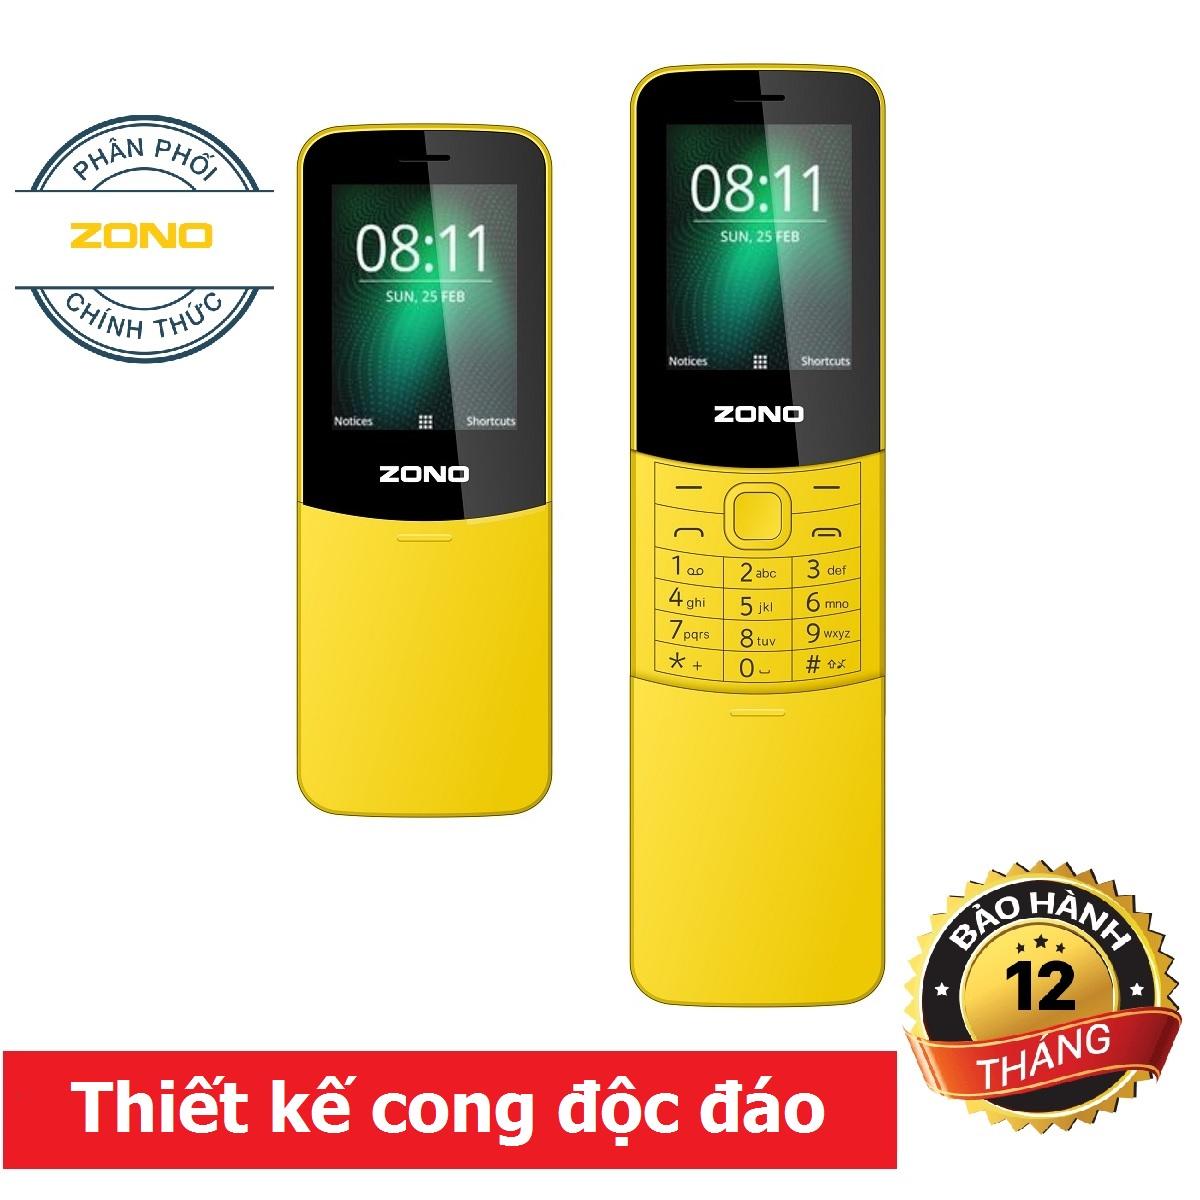 Điện thoại di động ZONO N8110 2.4 inch, 2 Sim - Vàng